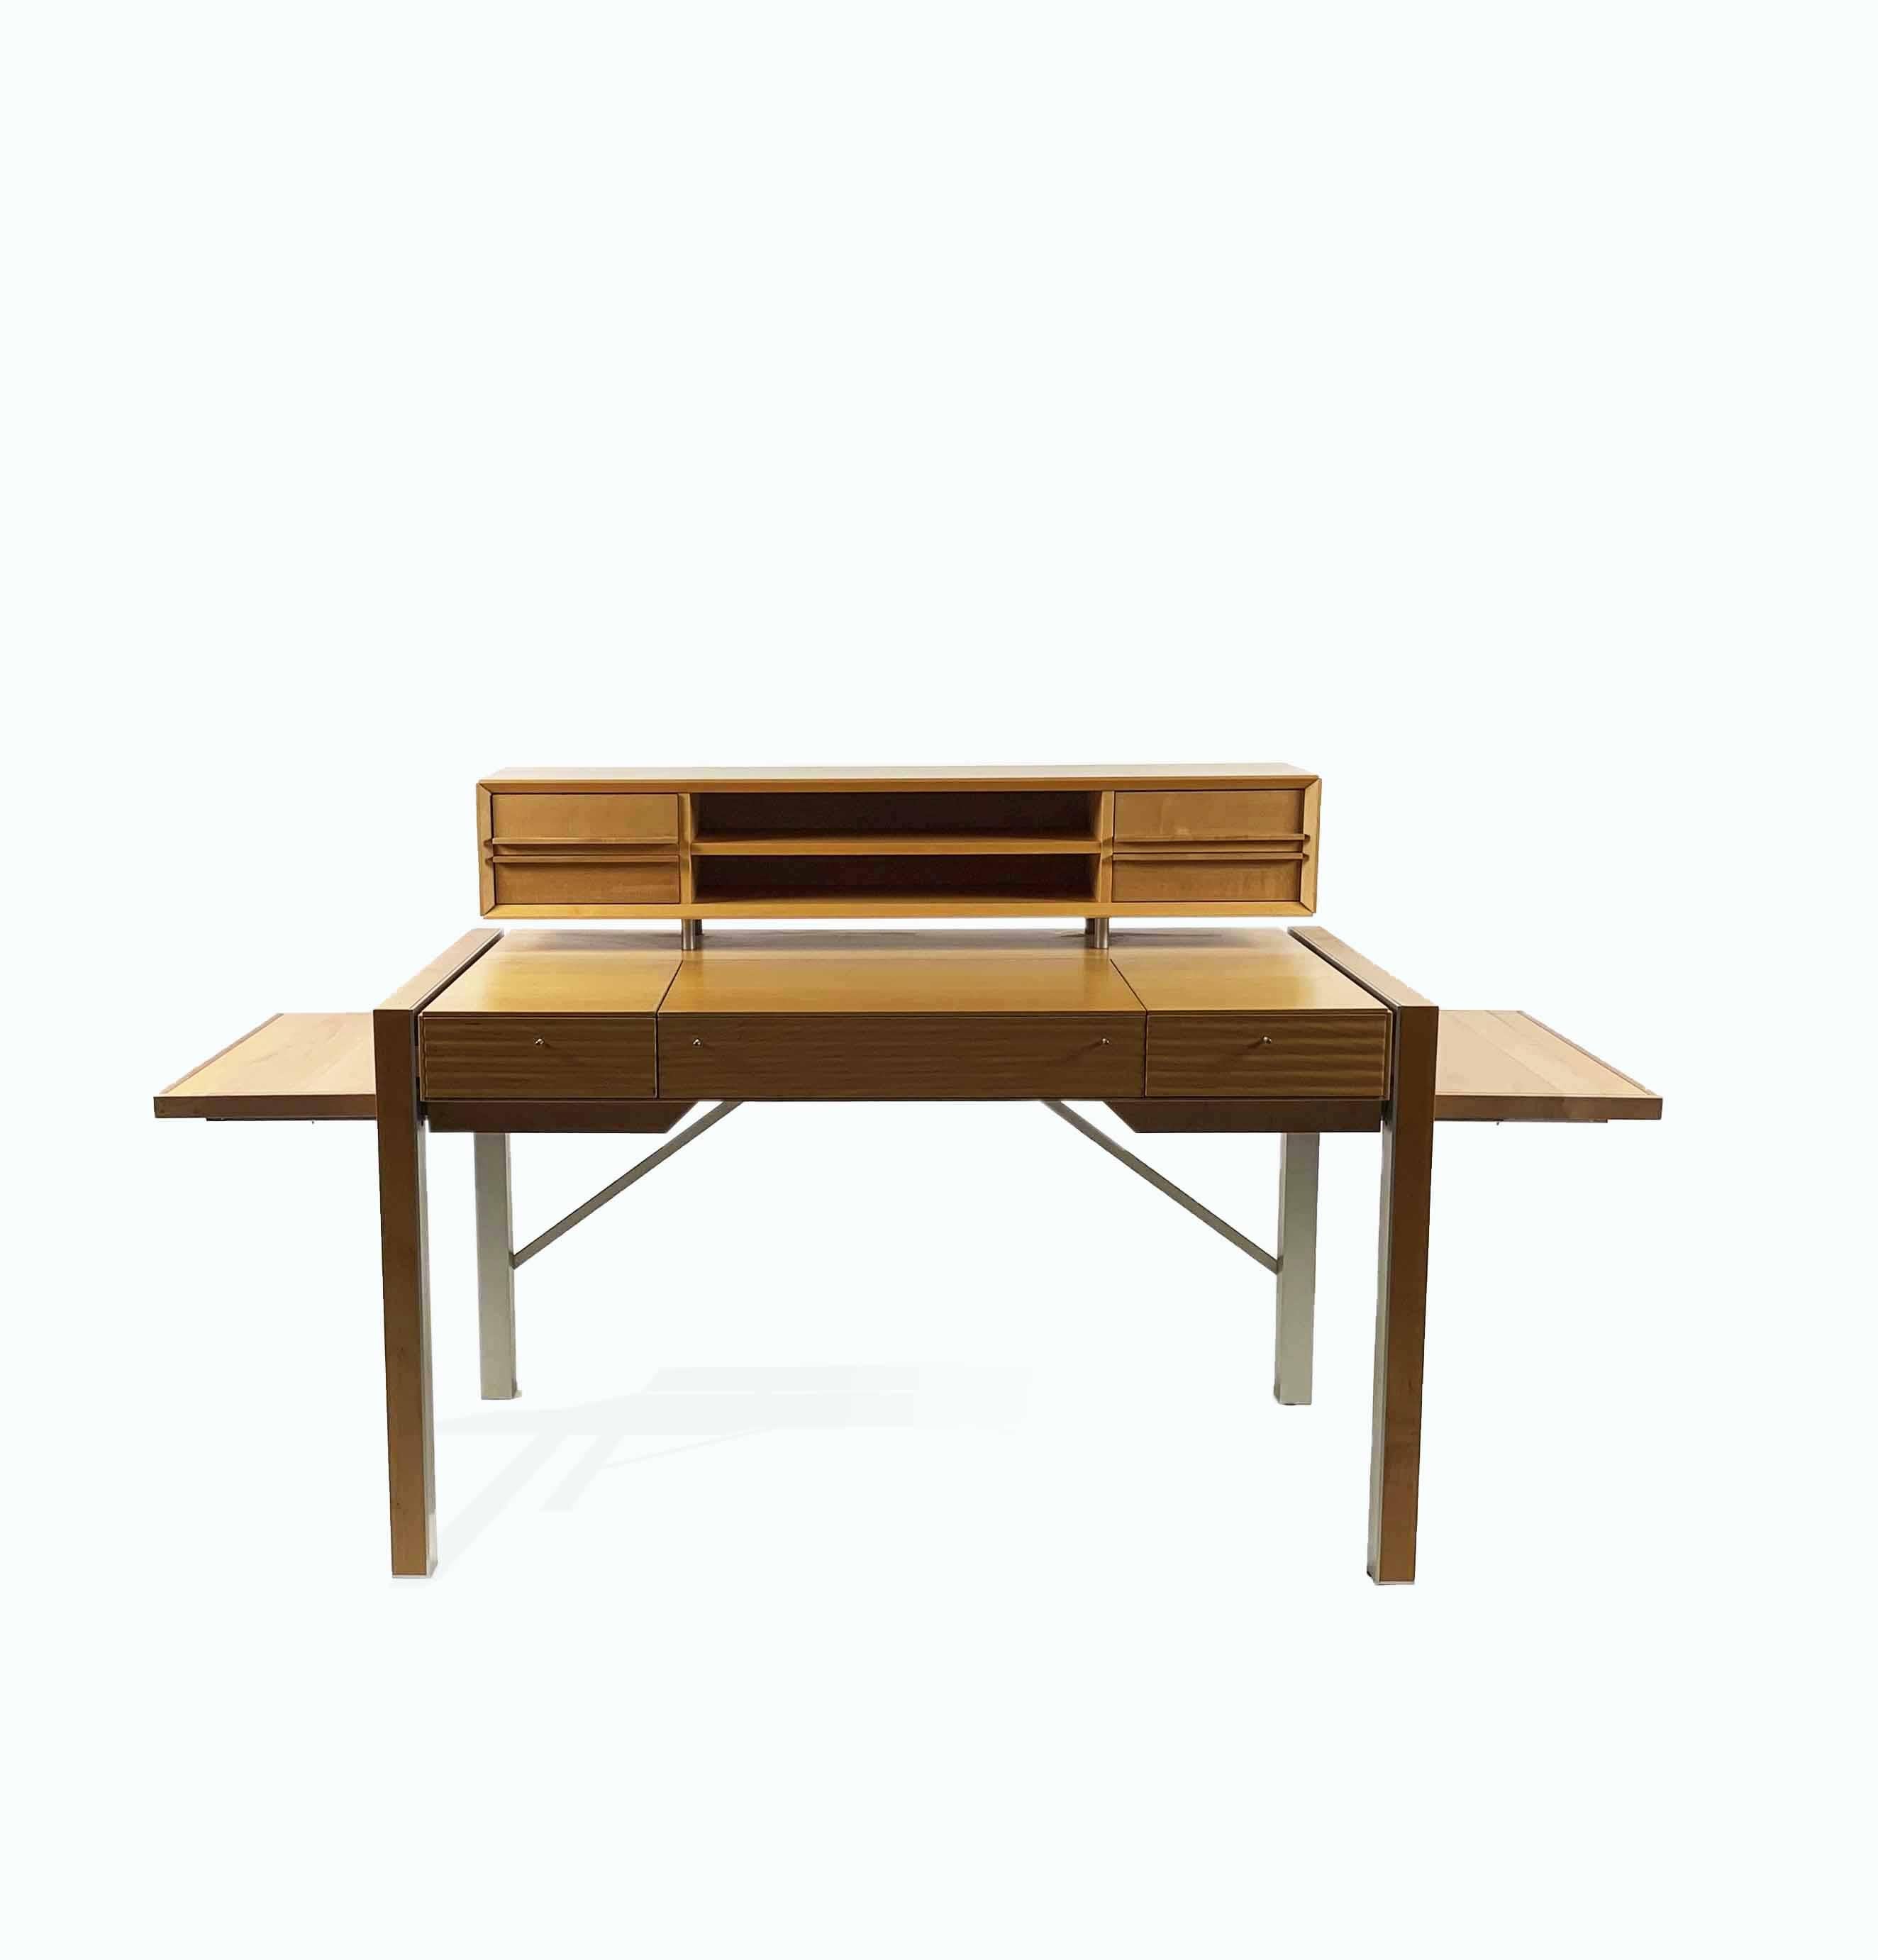 Der 1999 von Naghi Habib entworfene Schreibtisch Tracks gehört zu einer Produktfamilie, die für Bernini entwickelt wurde und auf dem Konzept eines eleganten Zuhauses basiert, das dem modernen Bedürfnis nach Raumrationalisierung gerecht wird. Der